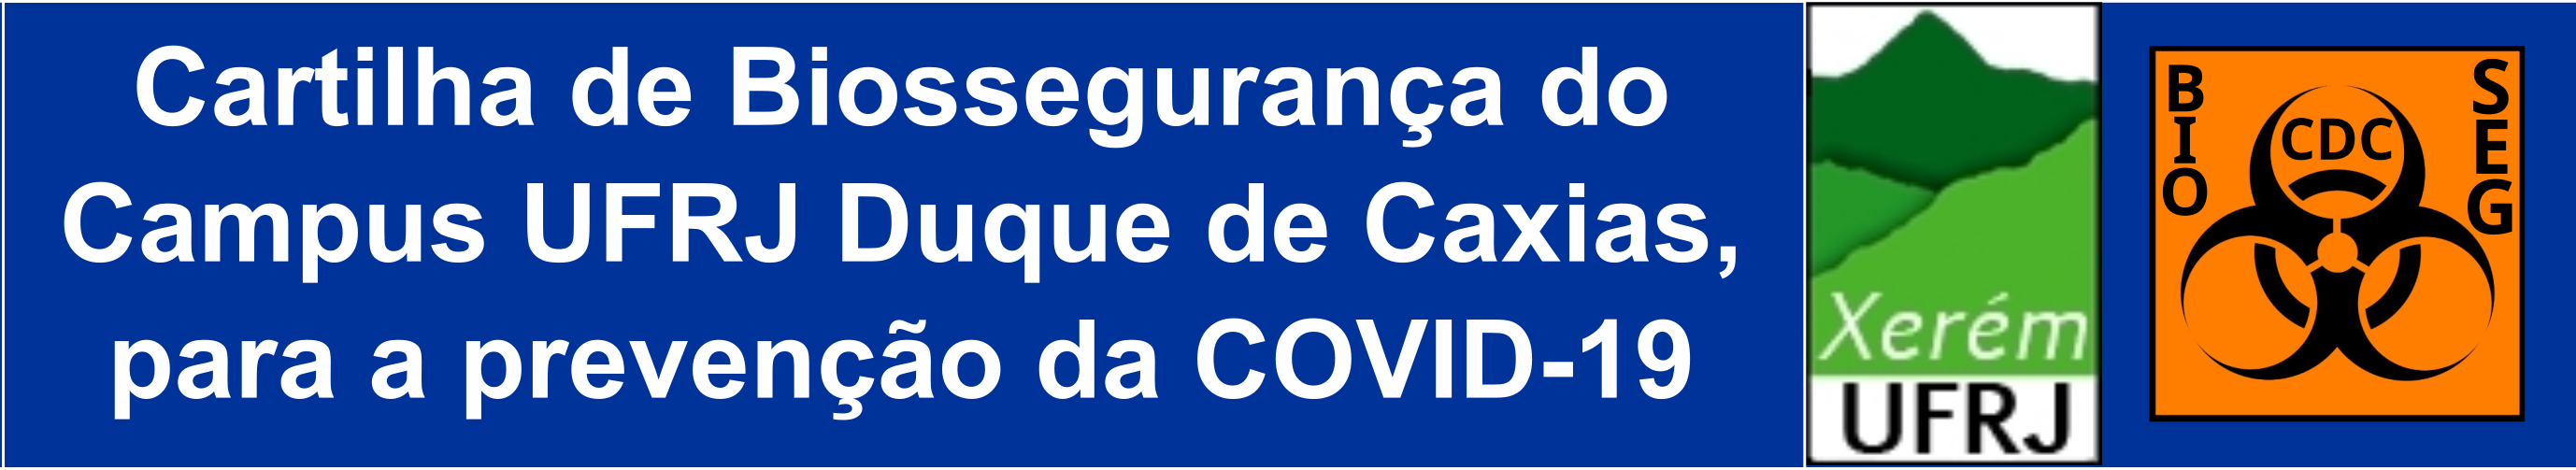 banner ufrj caxias covid19